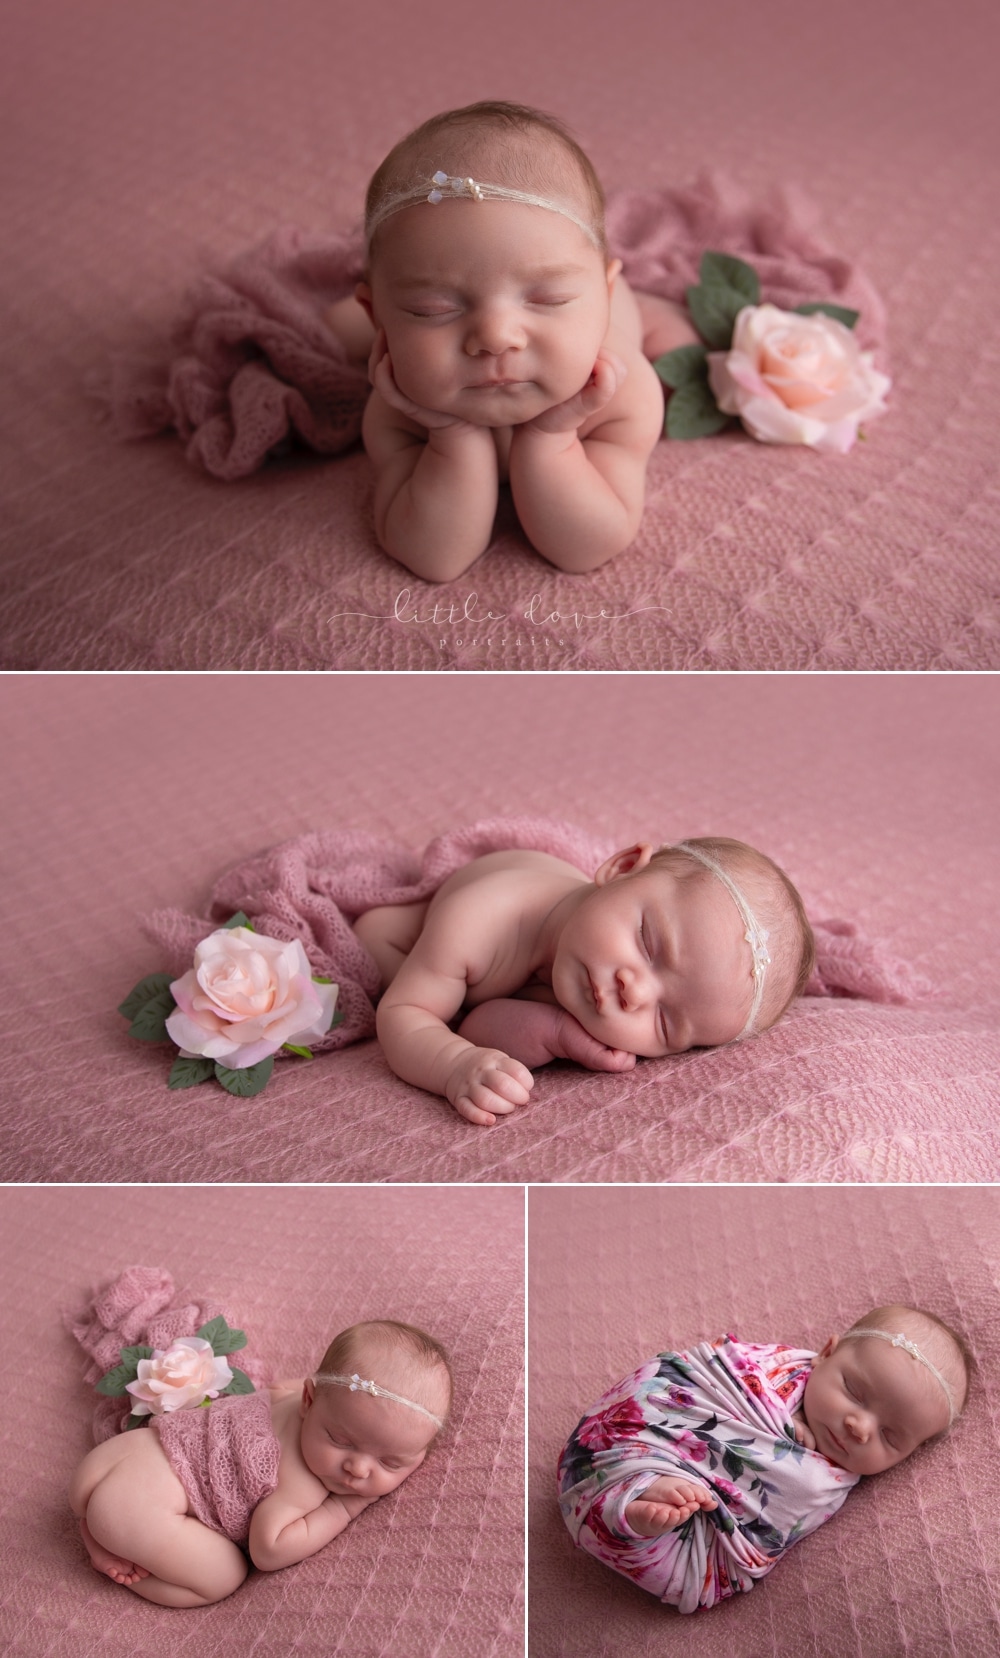 Plano Newborn Photographer | Girl newborn photoshoot with flowers